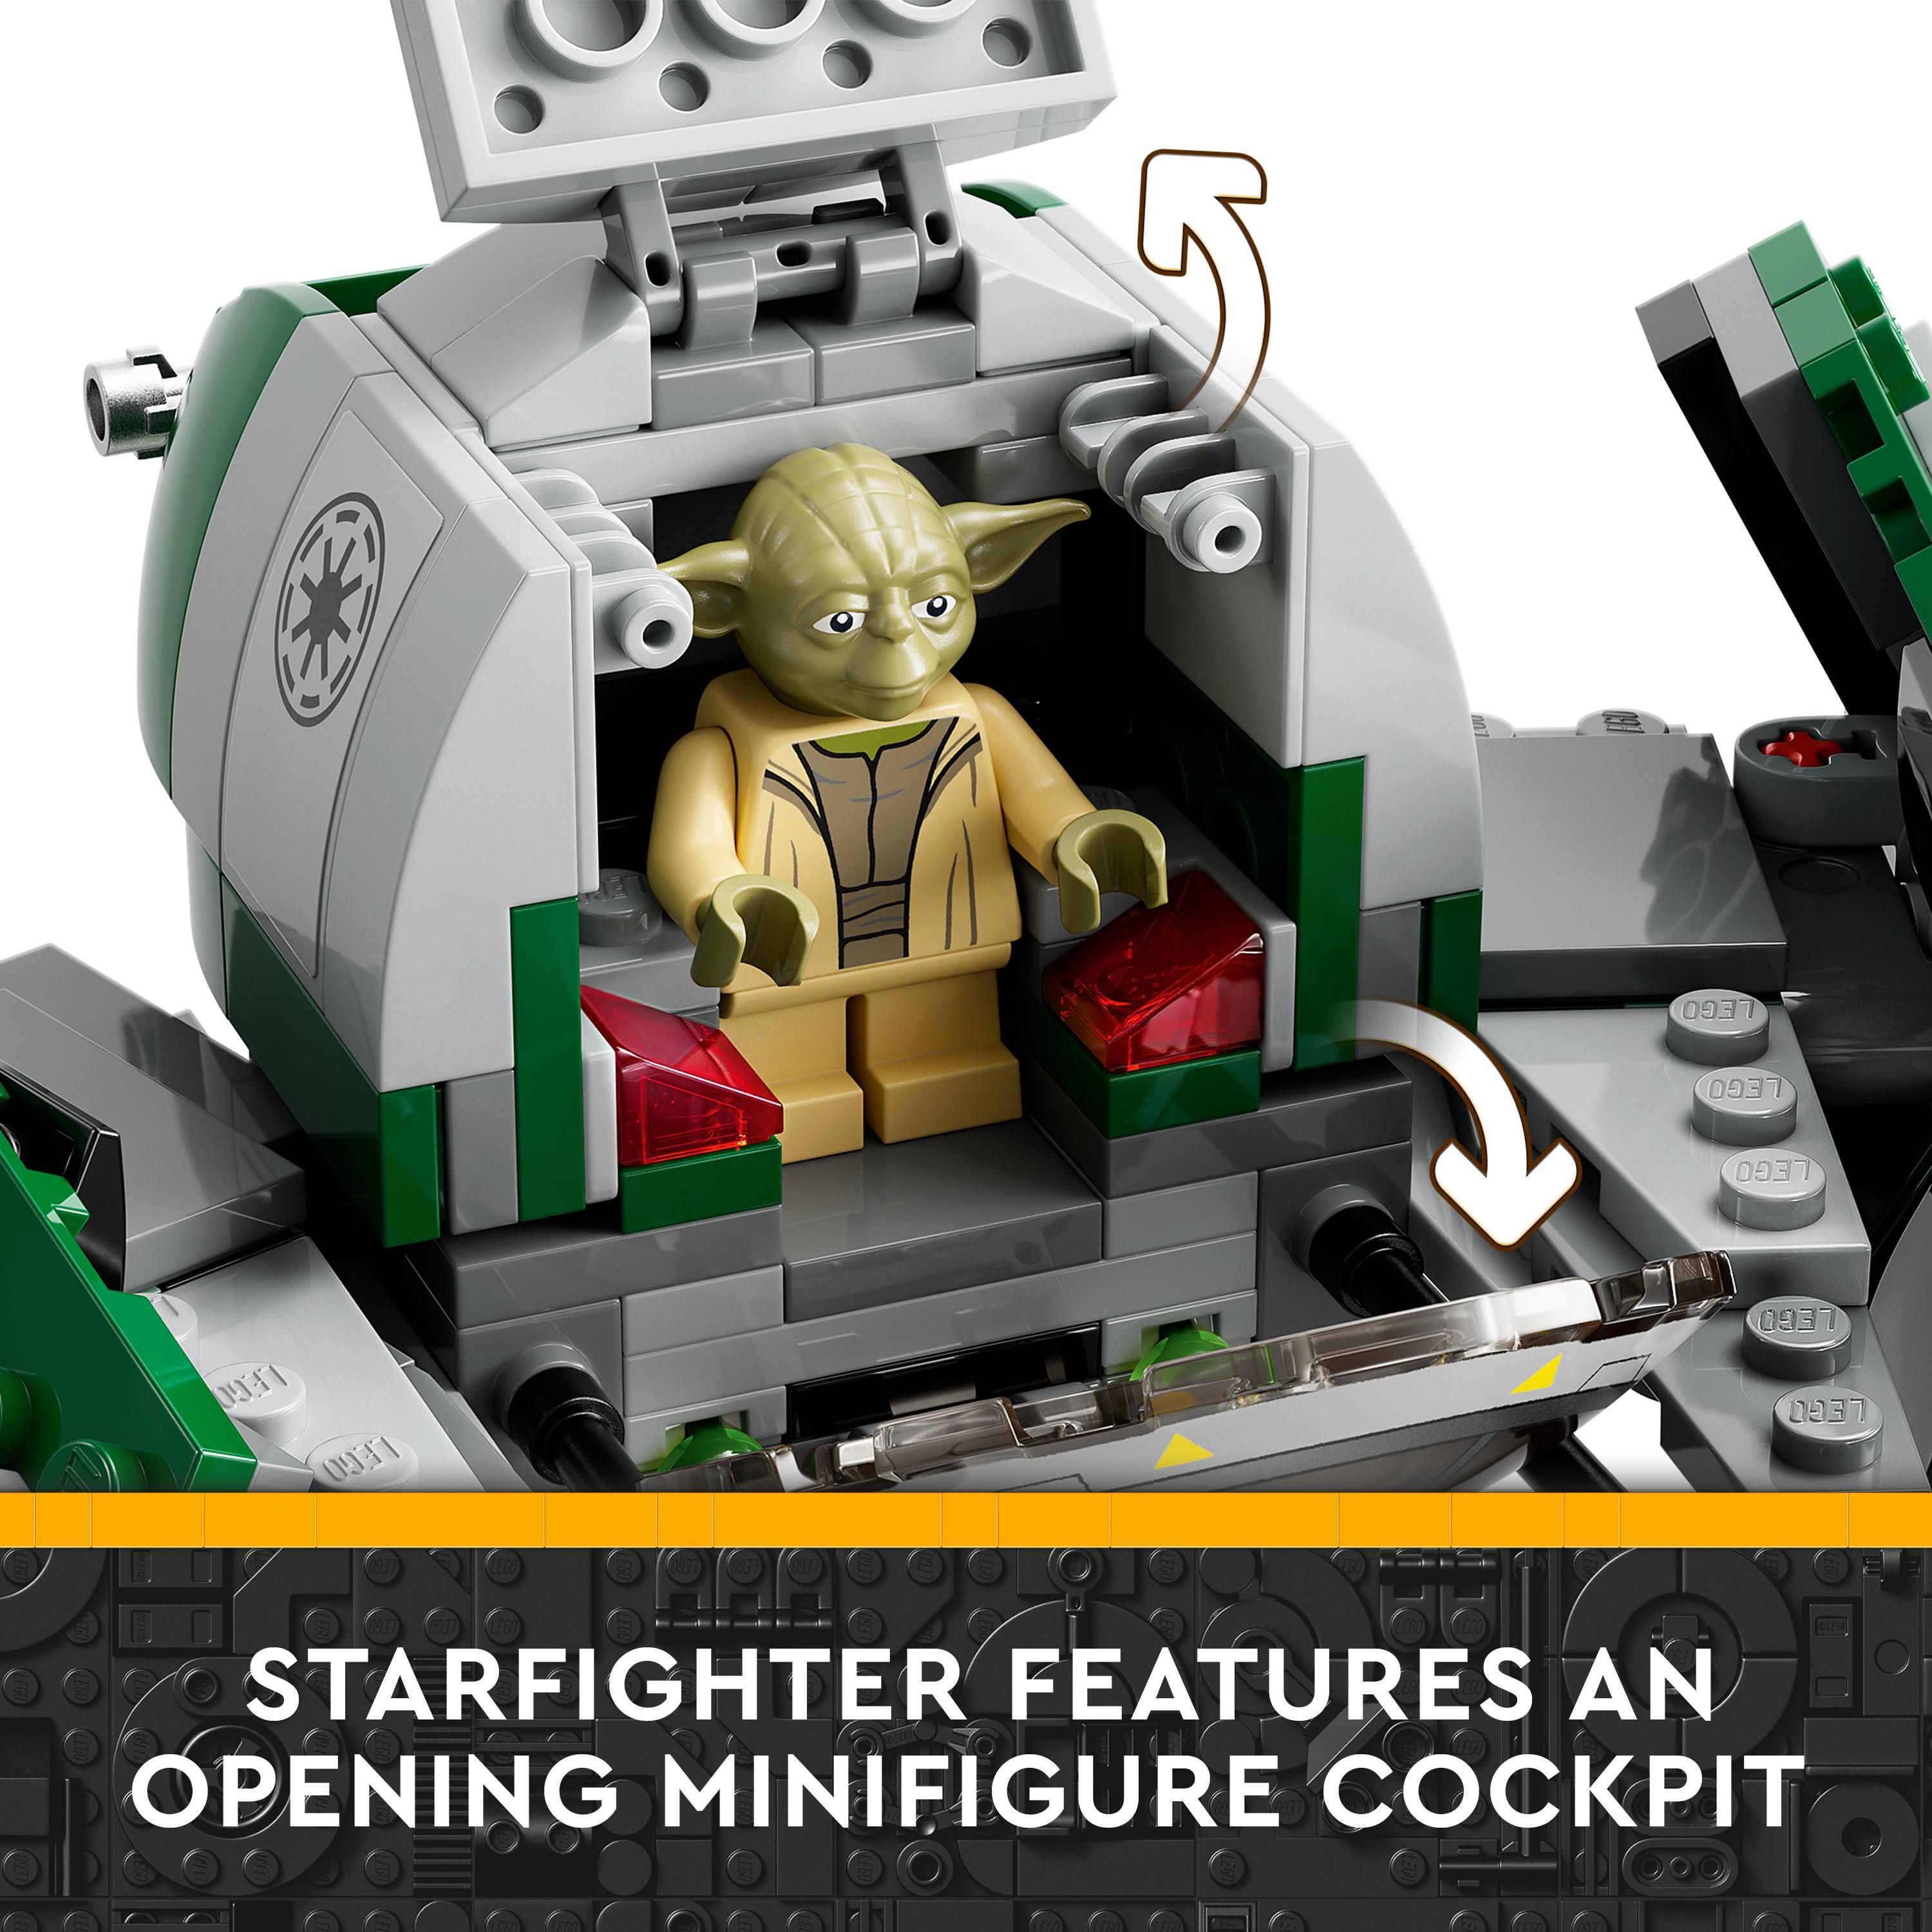 LEGO 75360 Star Wars The Clone Wars Yoda's Jedi Starfighter